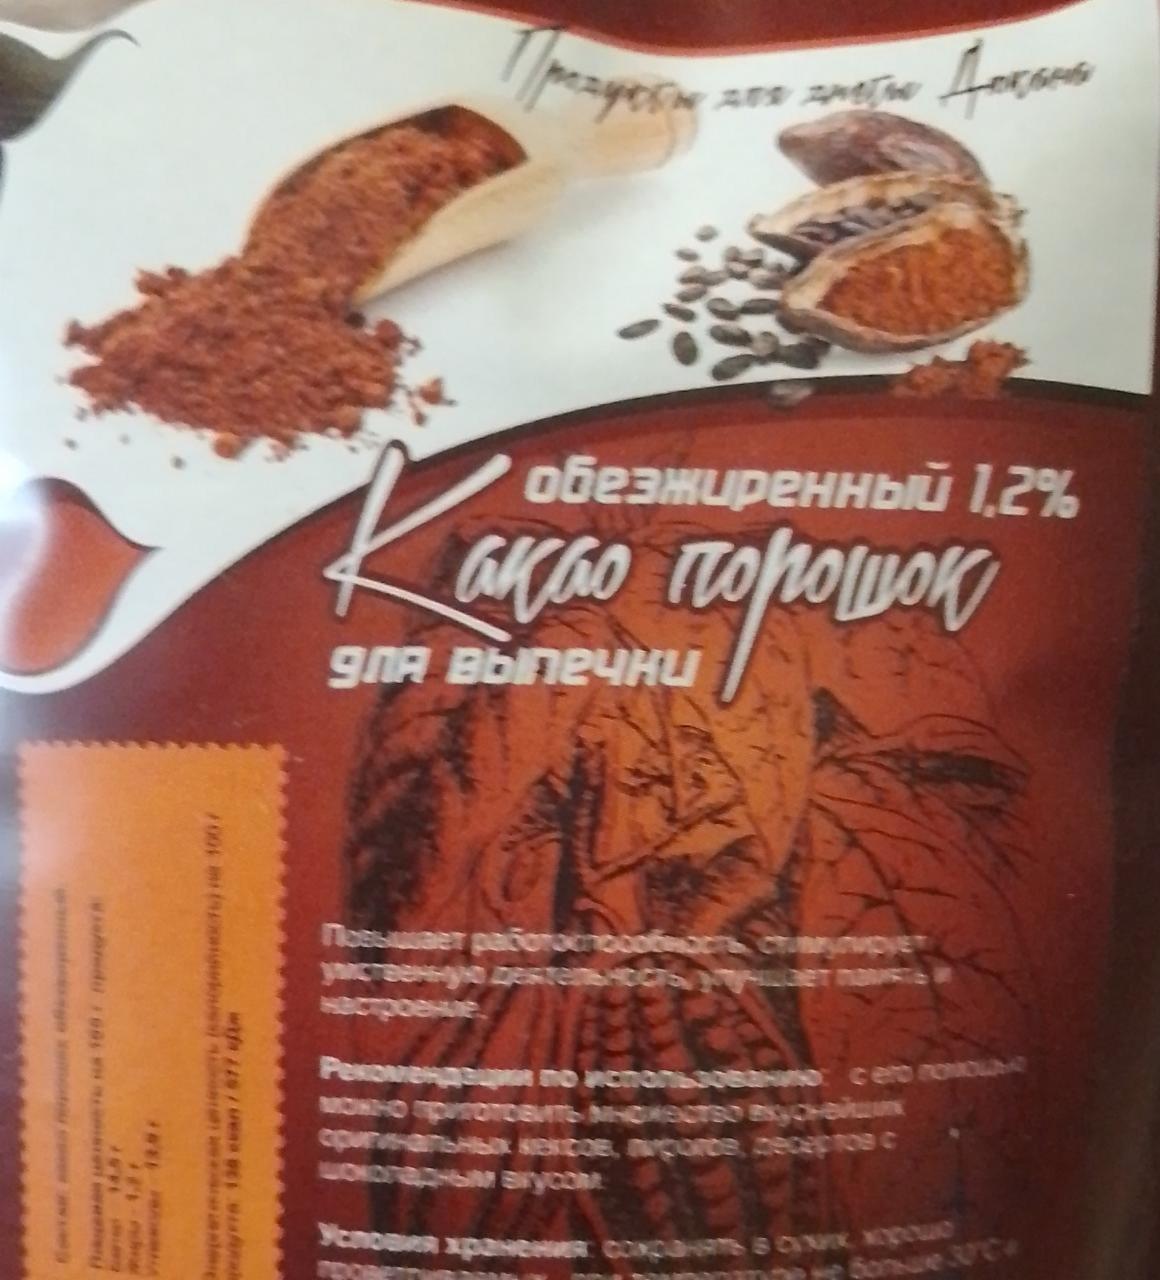 Фото - Продукти для дієти Дюкана Какао-порошок для випічки знежирене 1.2% Україна